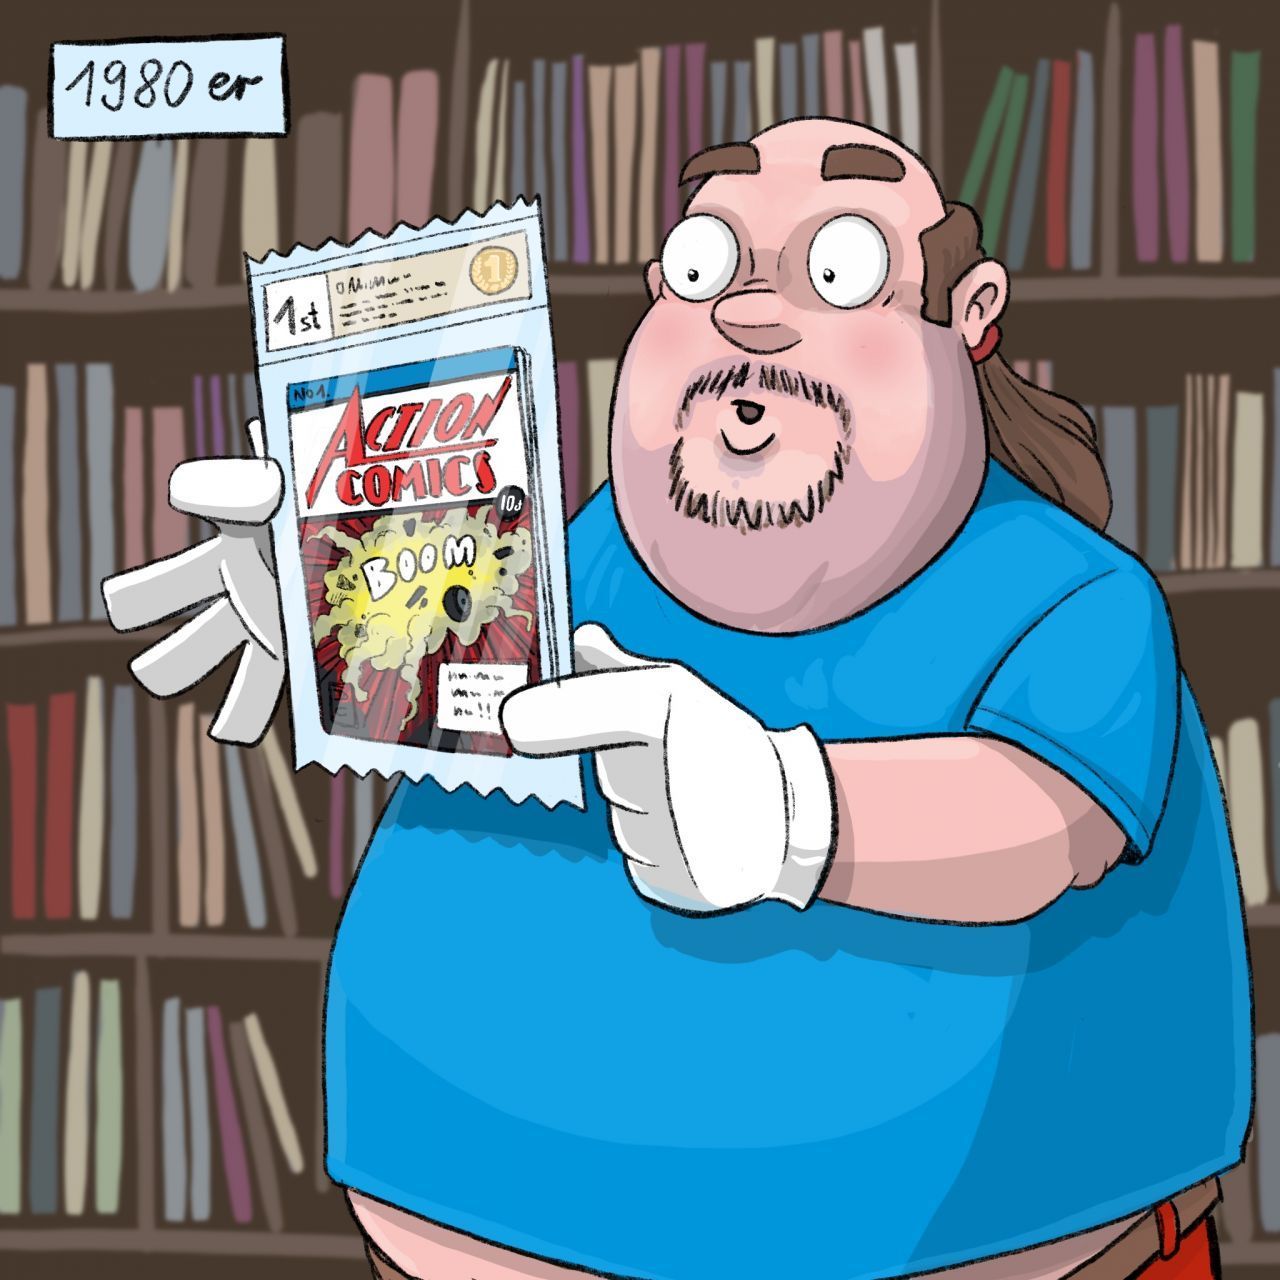 80er-Jahre: Comics etablieren sich als begehrte Sammlerstücke. Überall entstehen spezielle Comic-Läden, die ihre Ware direkt vergünstigt bei den Verlagen kaufen können. Sie sorgen dafür, dass die Fans auch ältere Ausgaben bei ihnen im Sortiment finden.